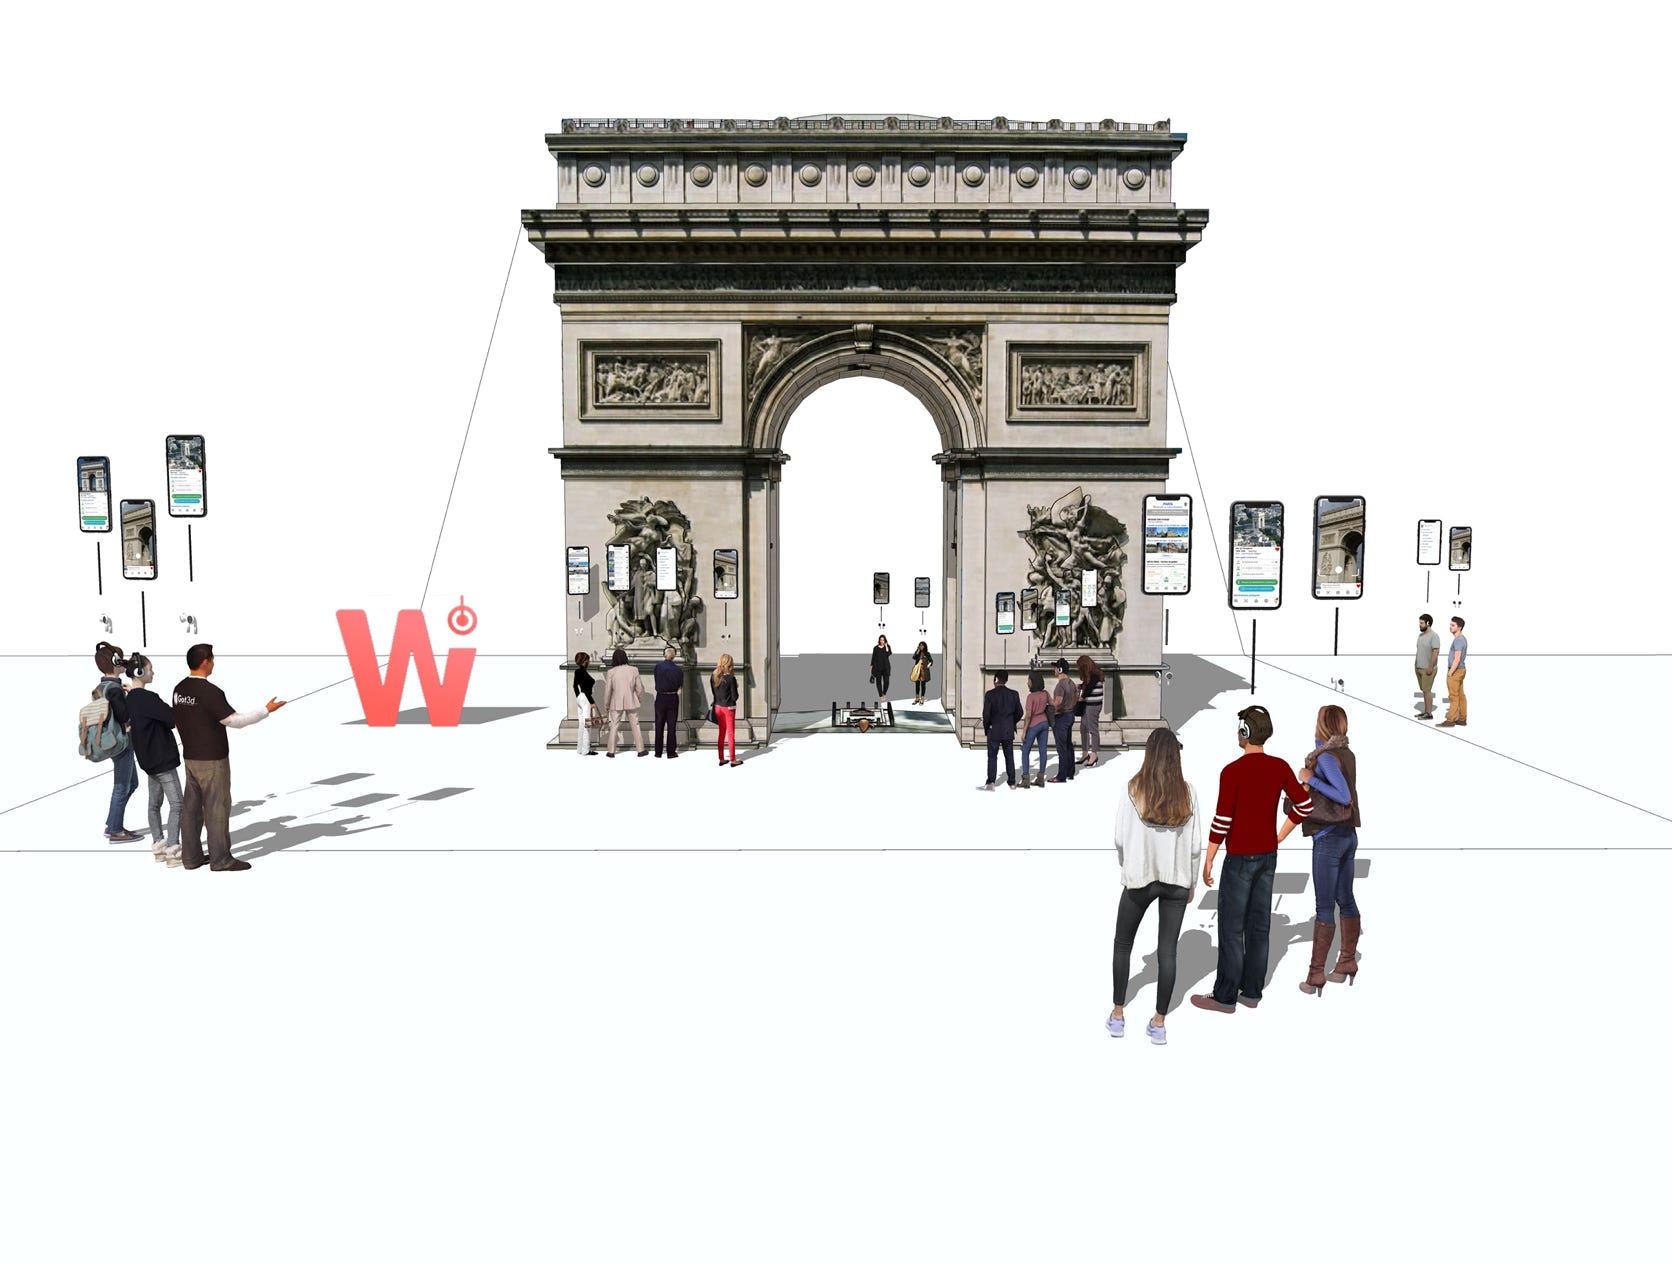 Design graphique : Whatizis- Reconnaissance de monuments - Mise en scène 3D